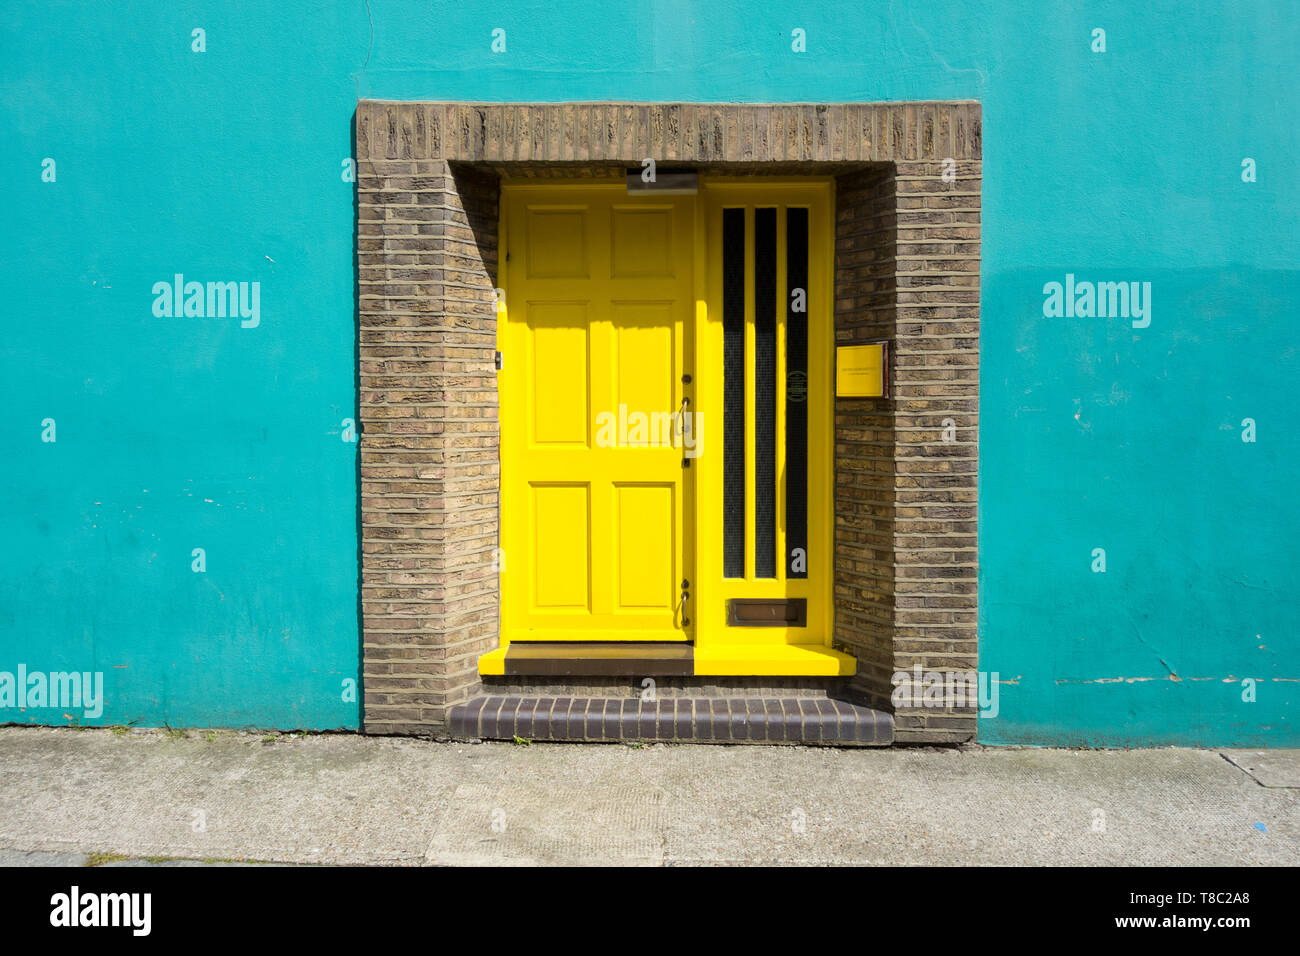 Eingang zum Wohlfühlen Institut - eine gelbe Tür auf eine türkise Wand Stockfoto